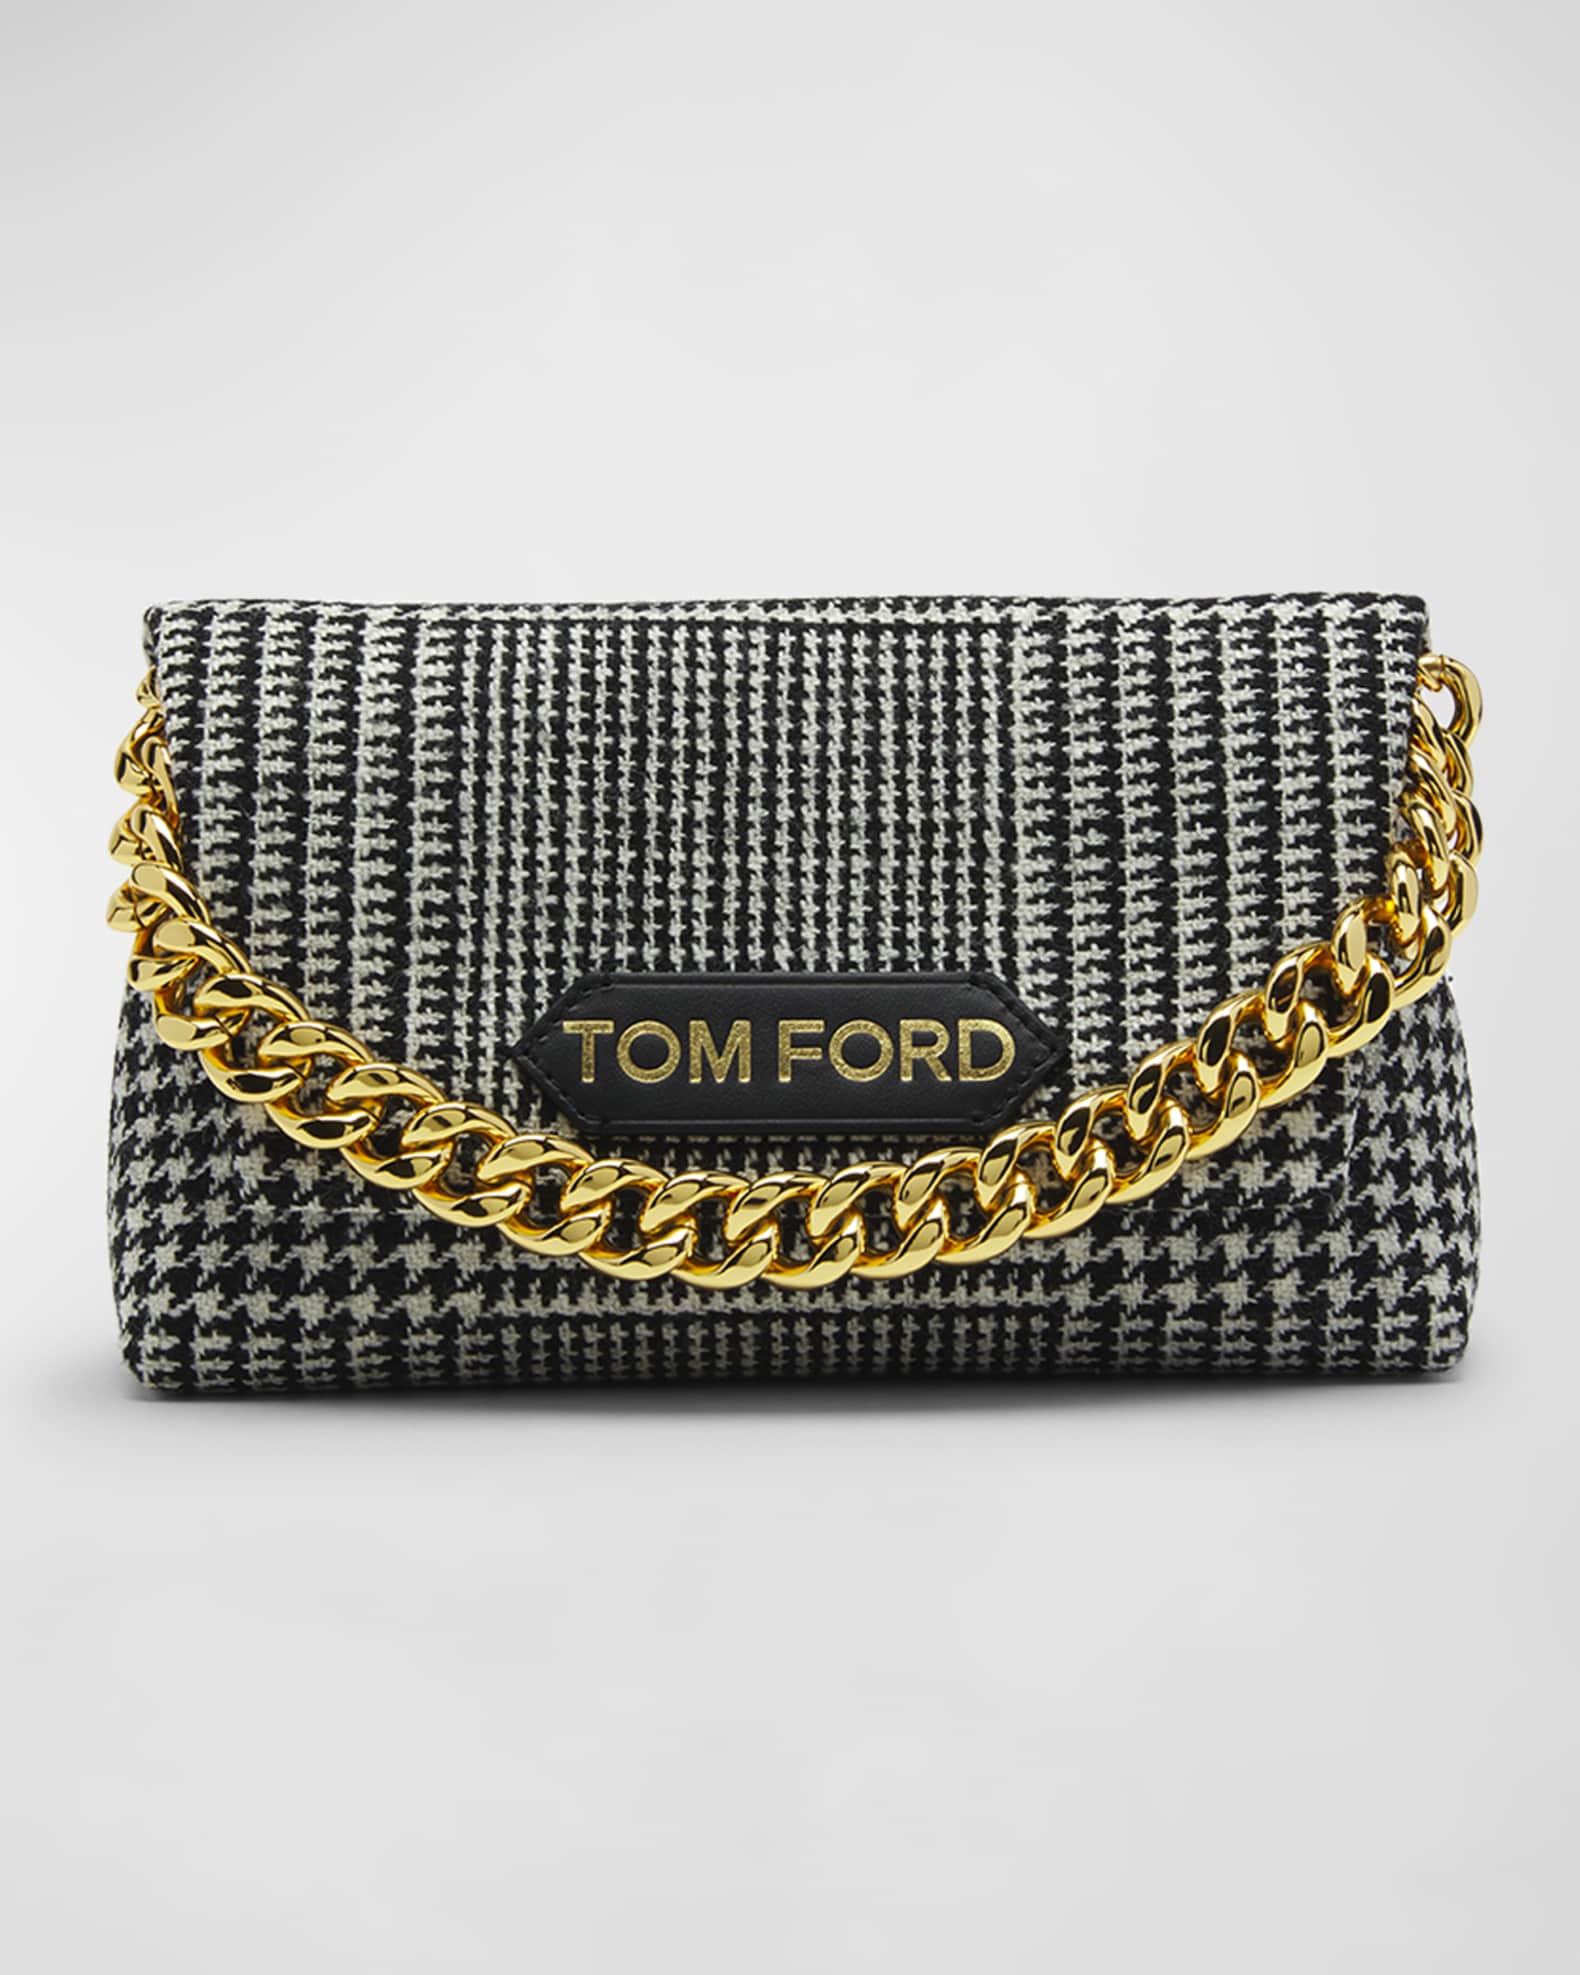 TOM FORD Natalia Velvet Chain Shoulder Bag - Bergdorf Goodman